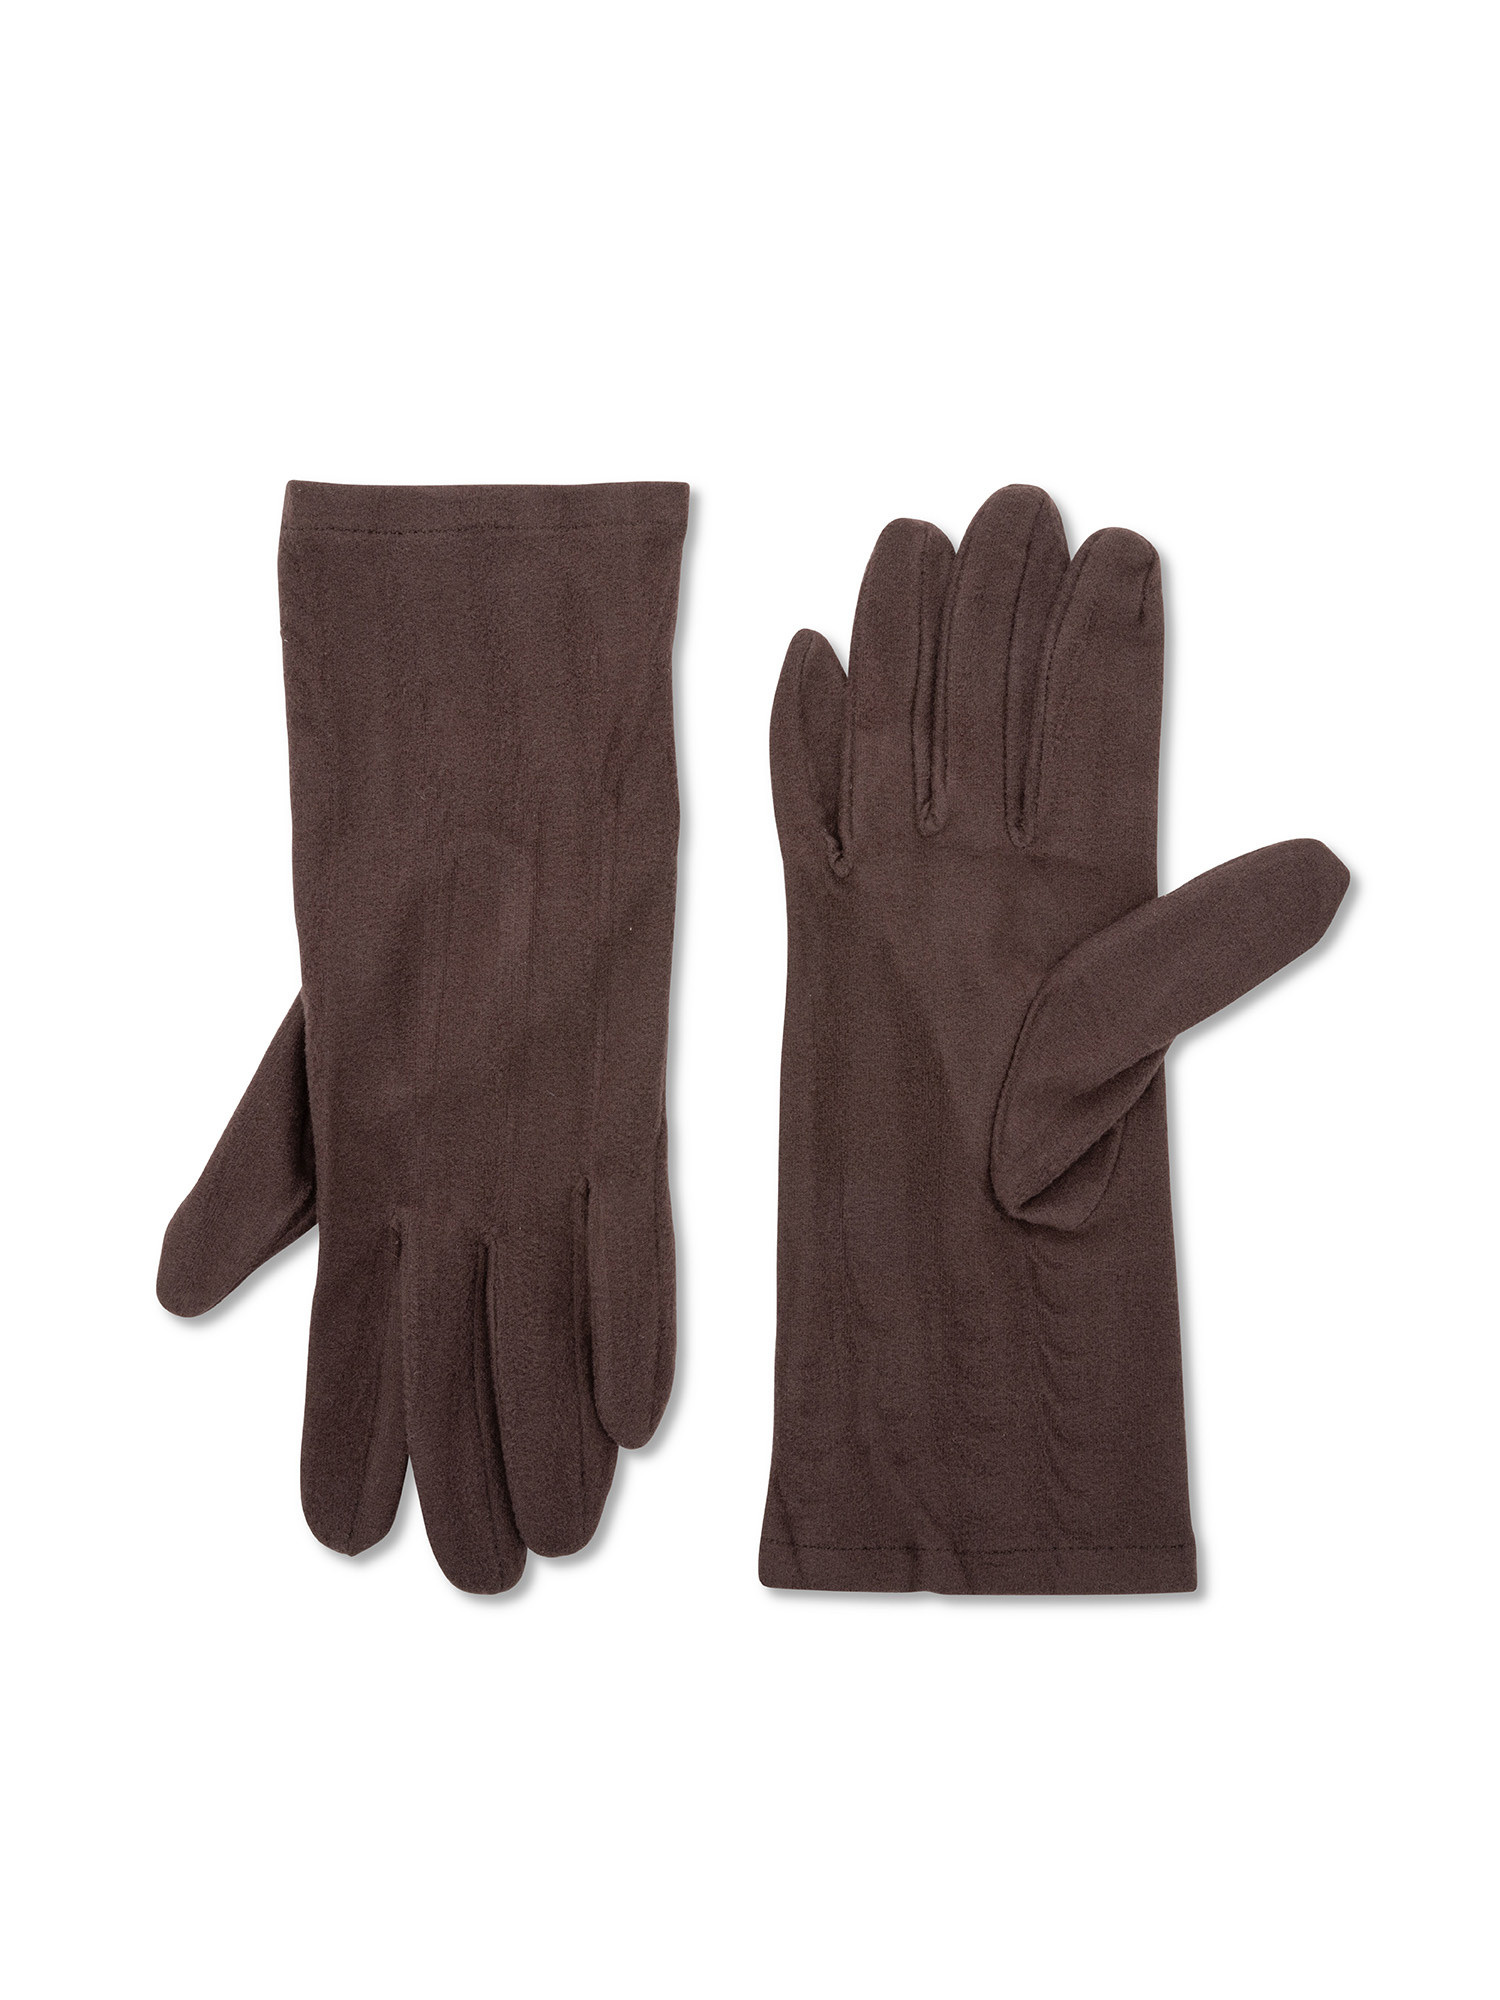 Koan - Solid color microfiber gloves, Dark Grey, large image number 0